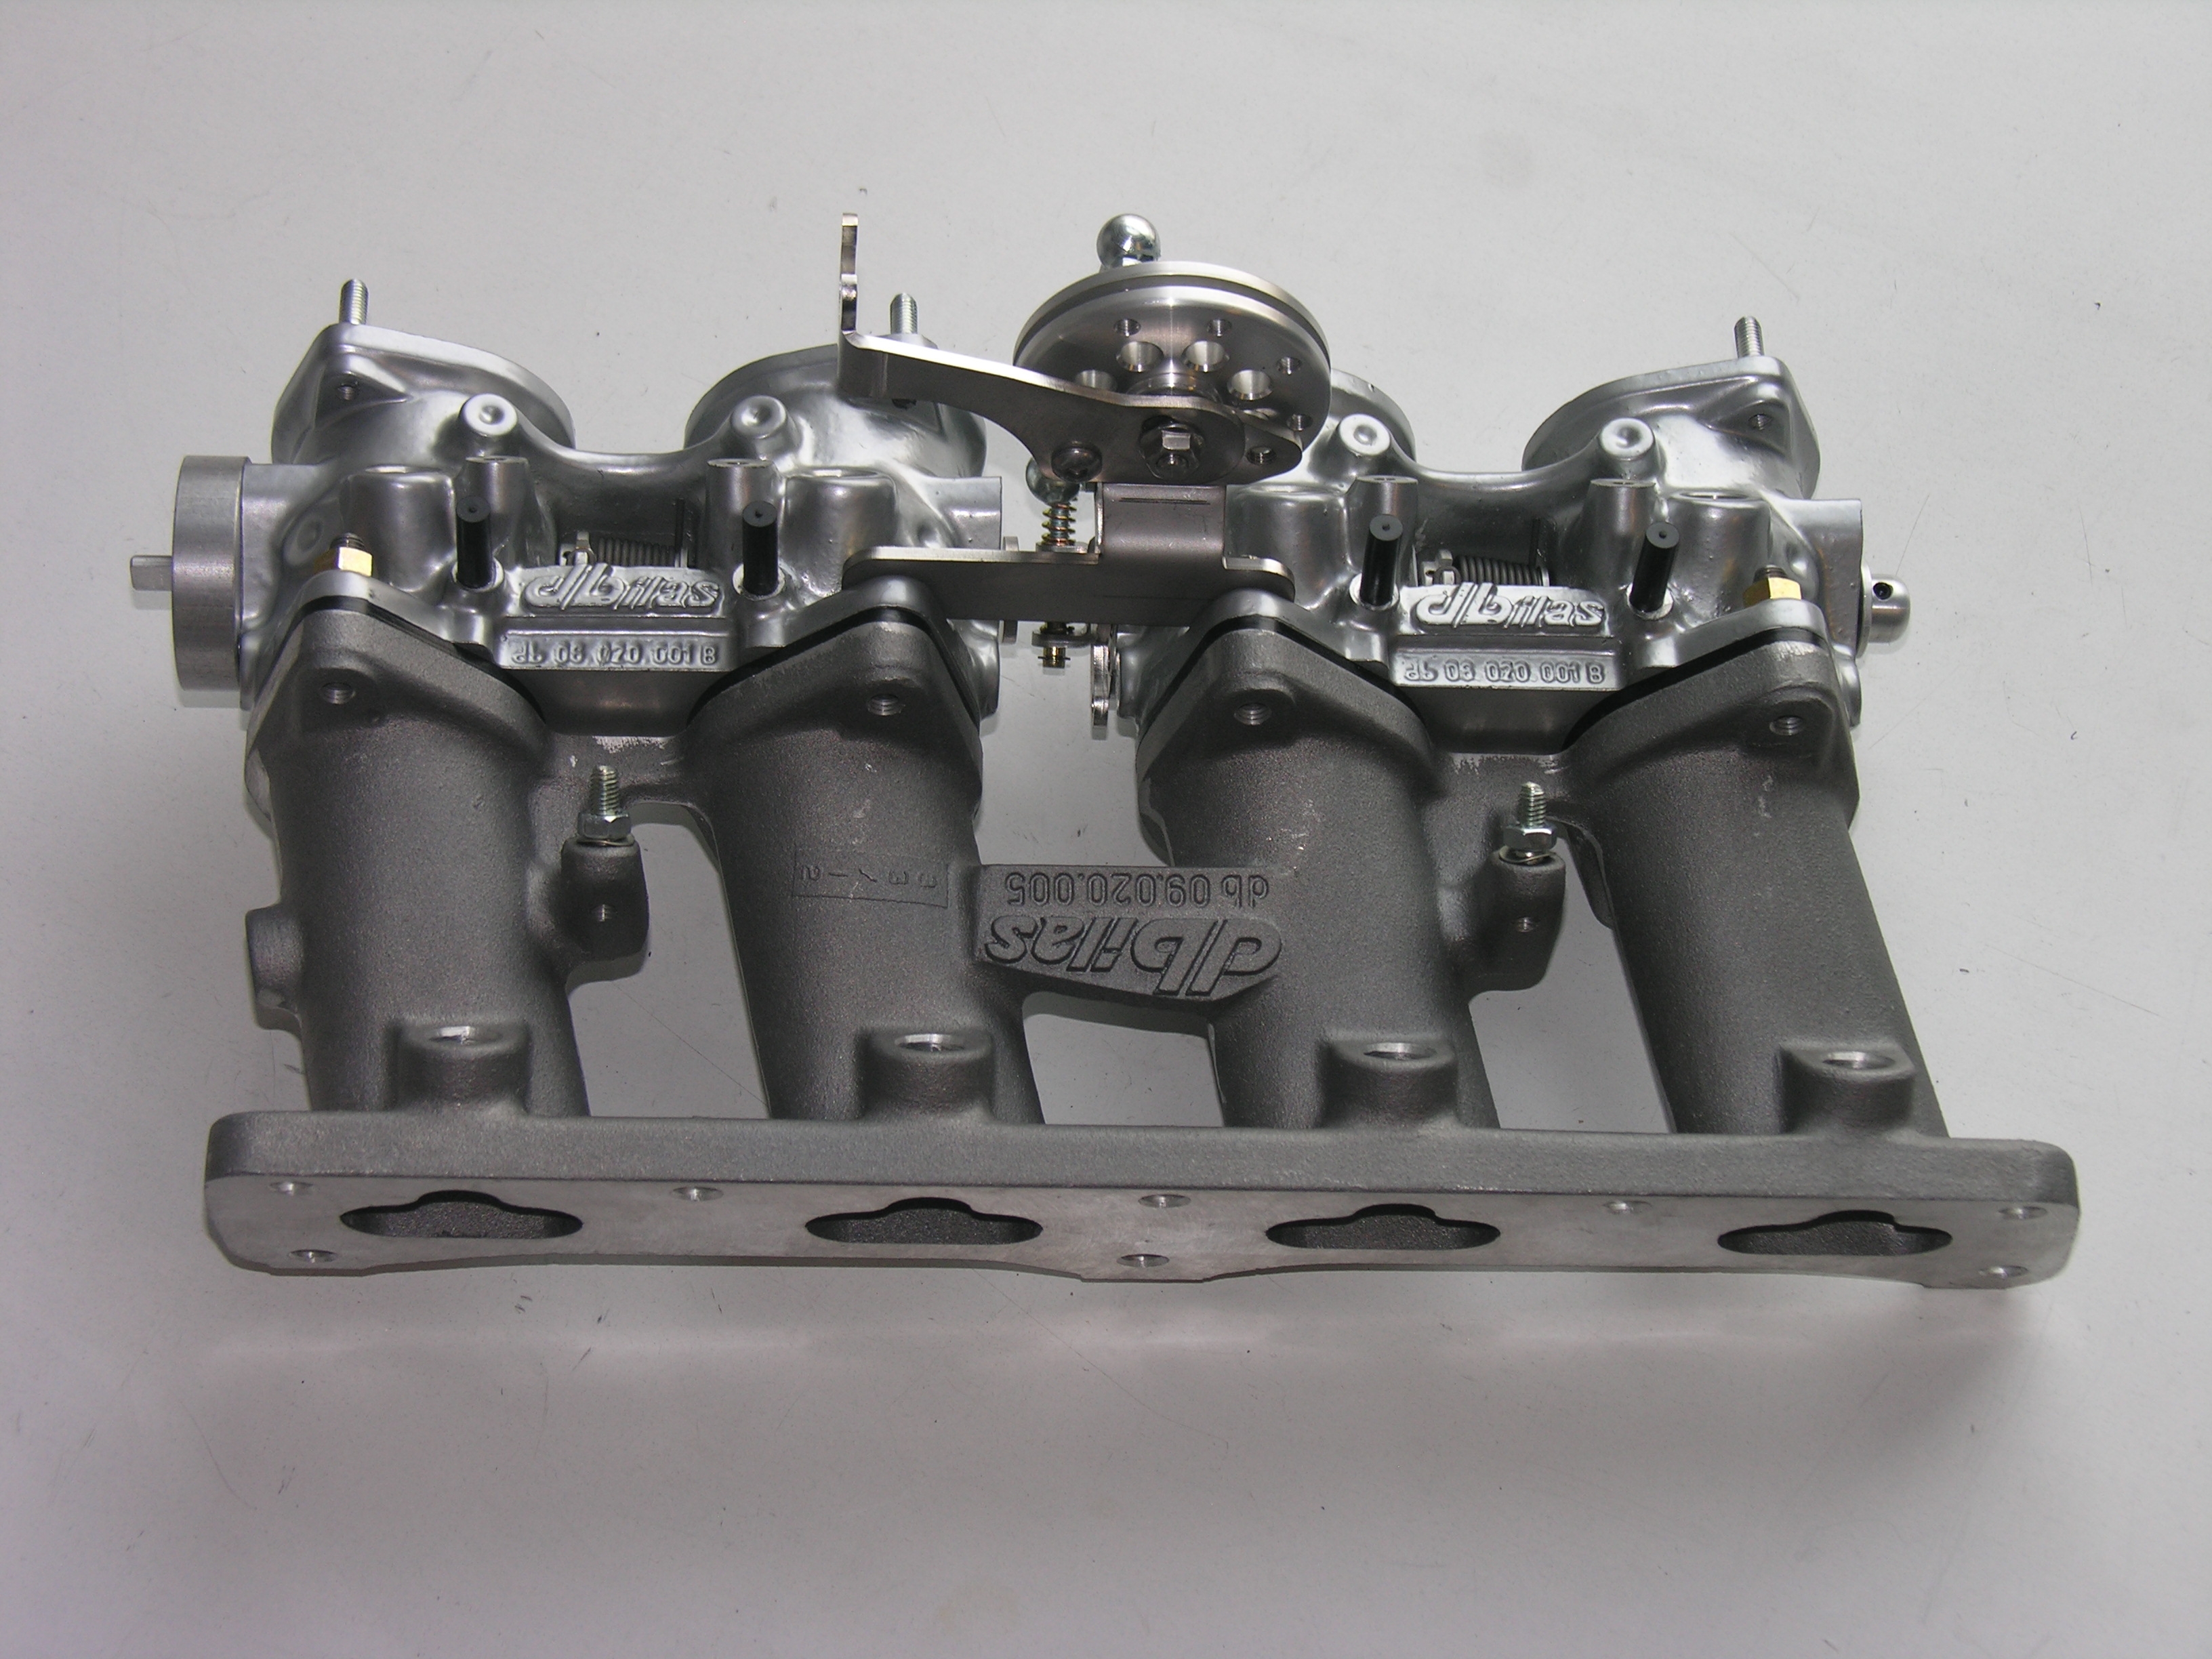 Mutli-throttle intake system for racing  for Peugeot EW10J4 & EW10J4S